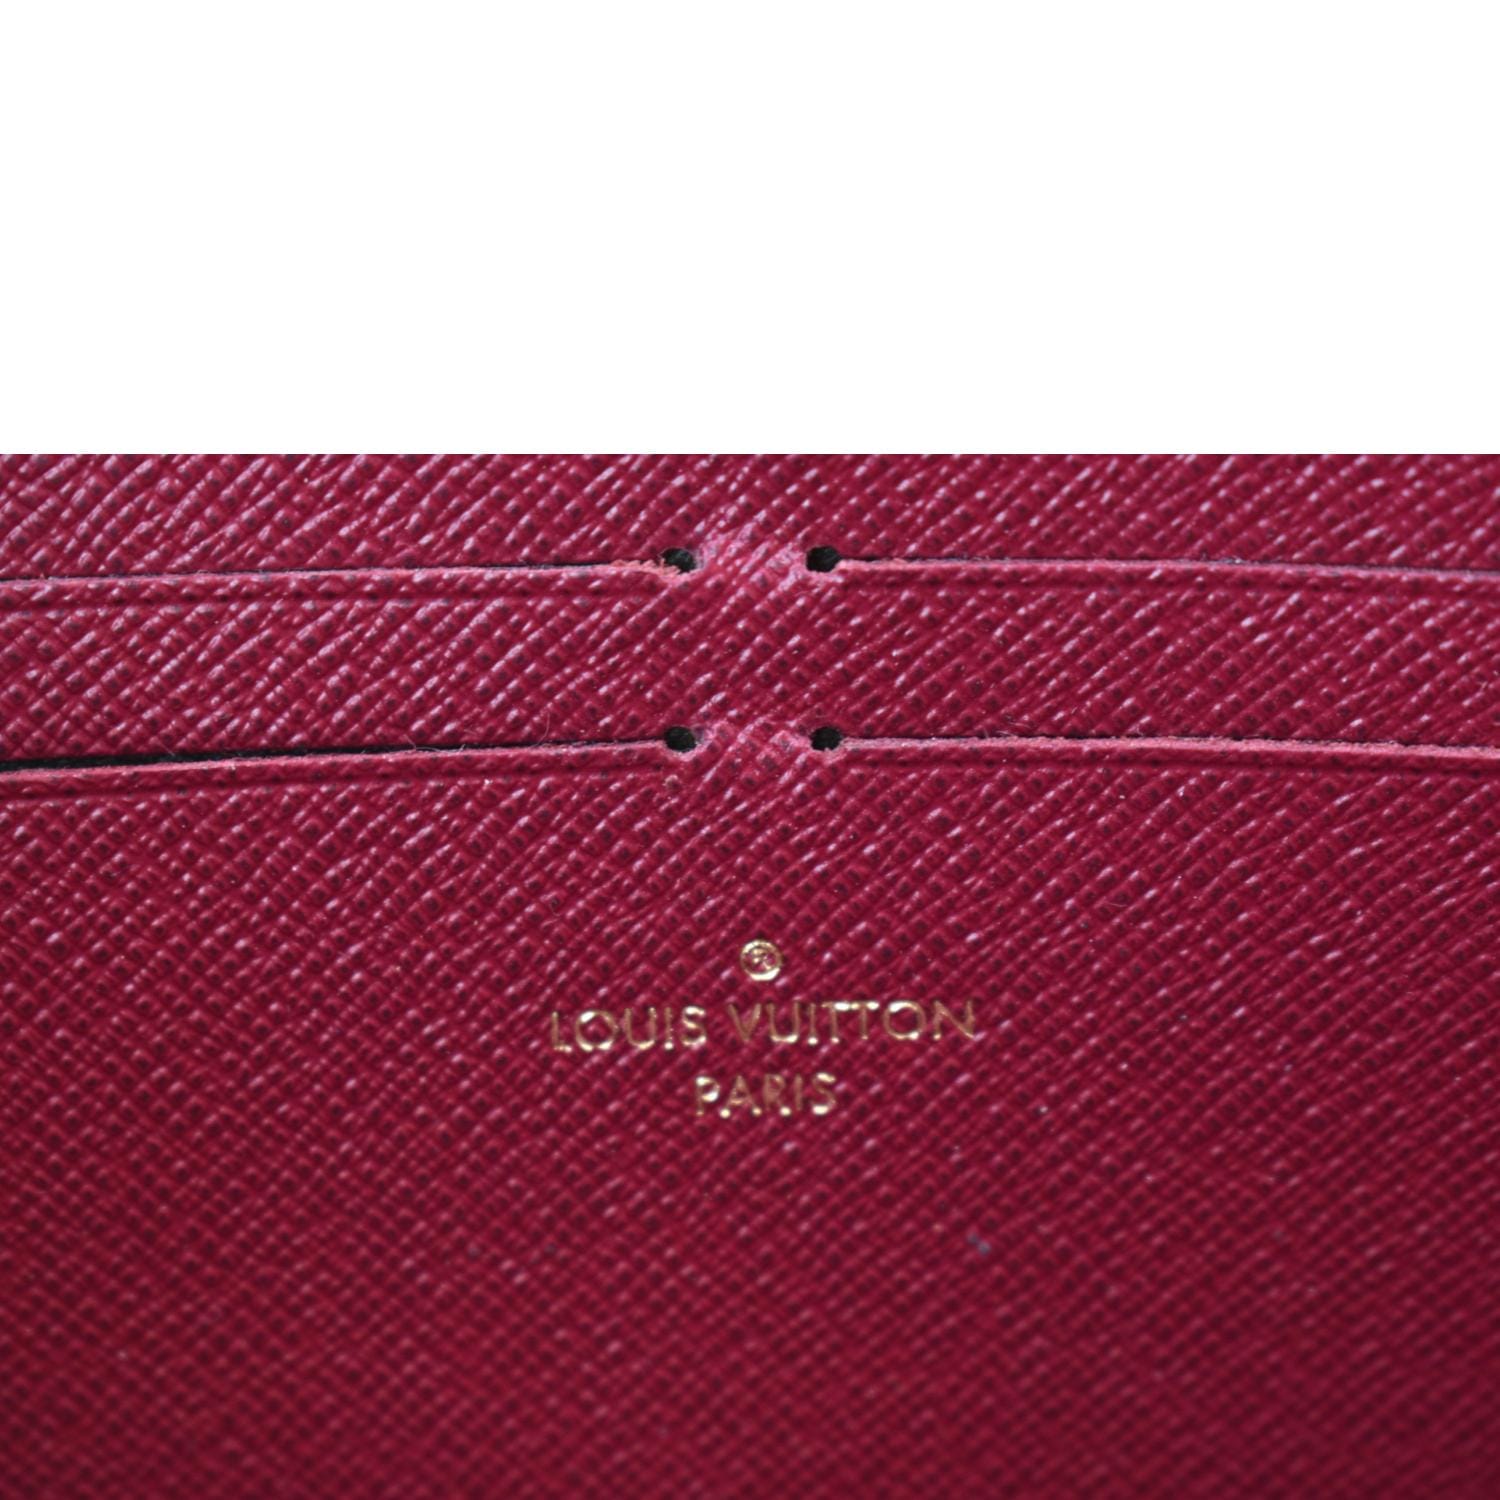 Louis Vuitton CARD HOLDER WITH ZIPPER